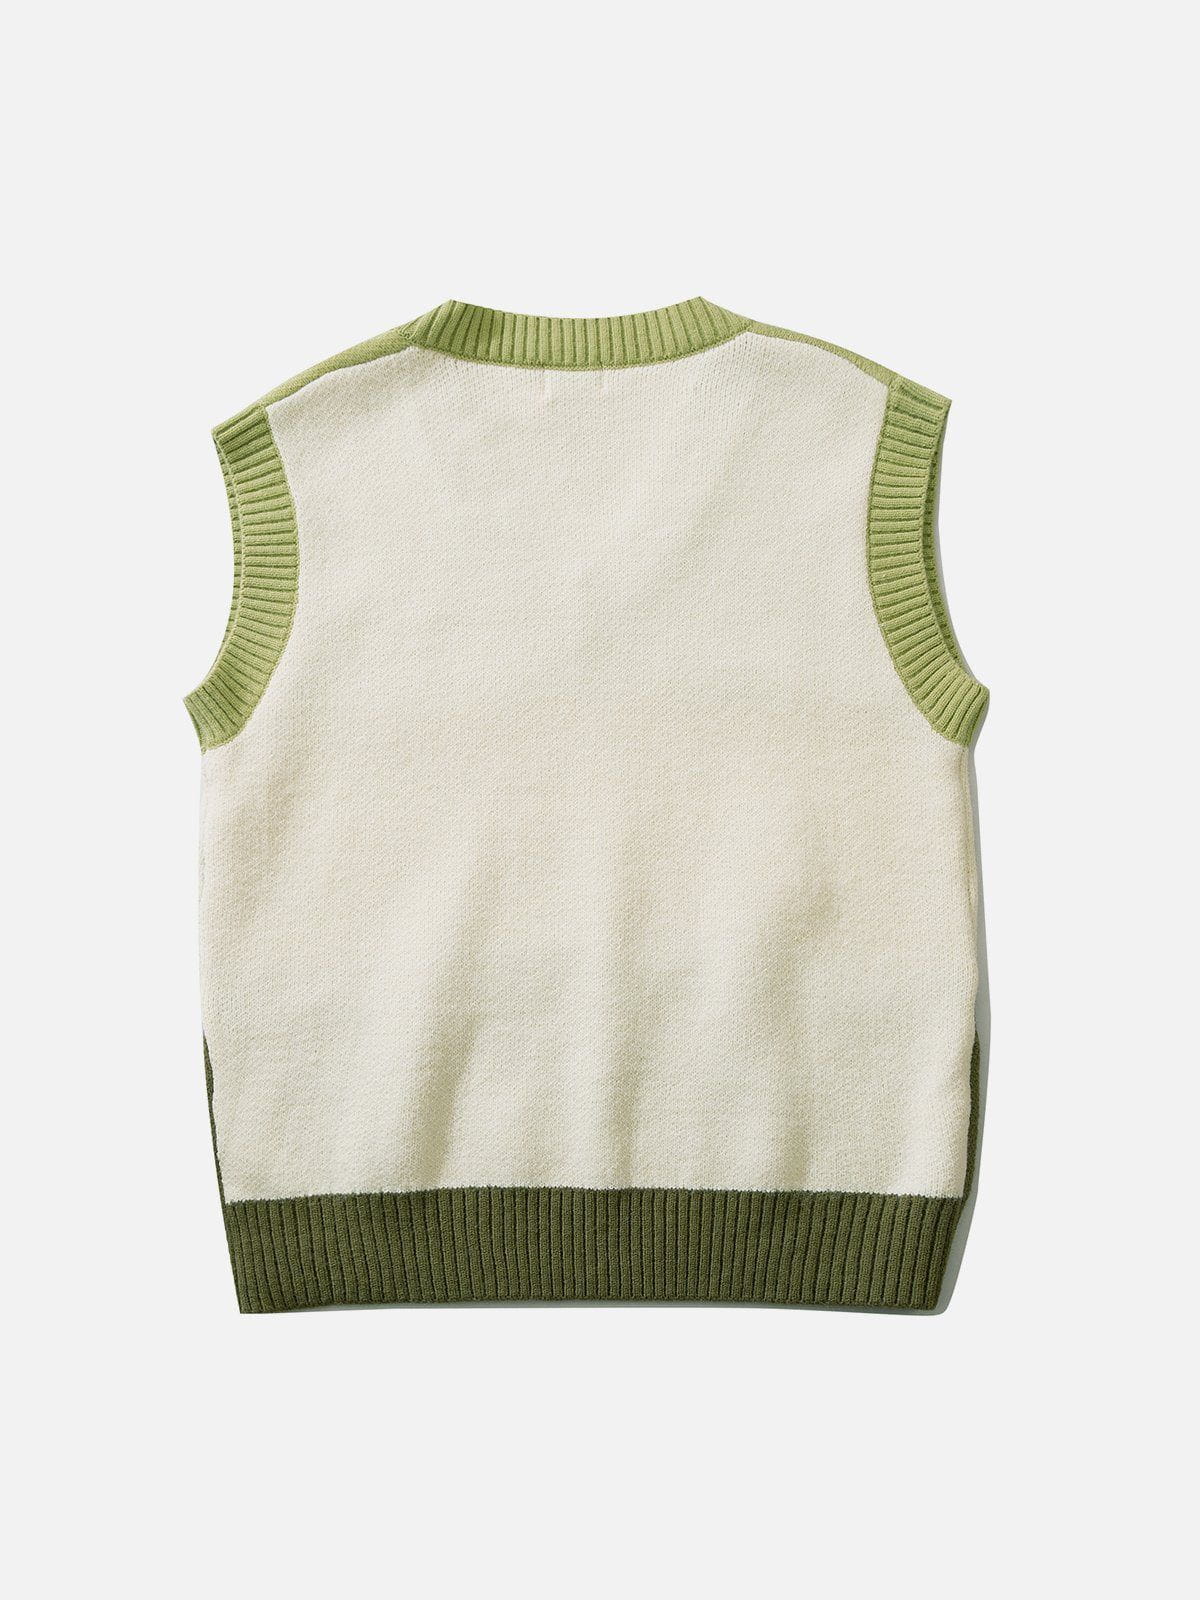 Eprezzy® - Tricolor Stitching Stripes Sweater Vest Streetwear Fashion - eprezzy.com